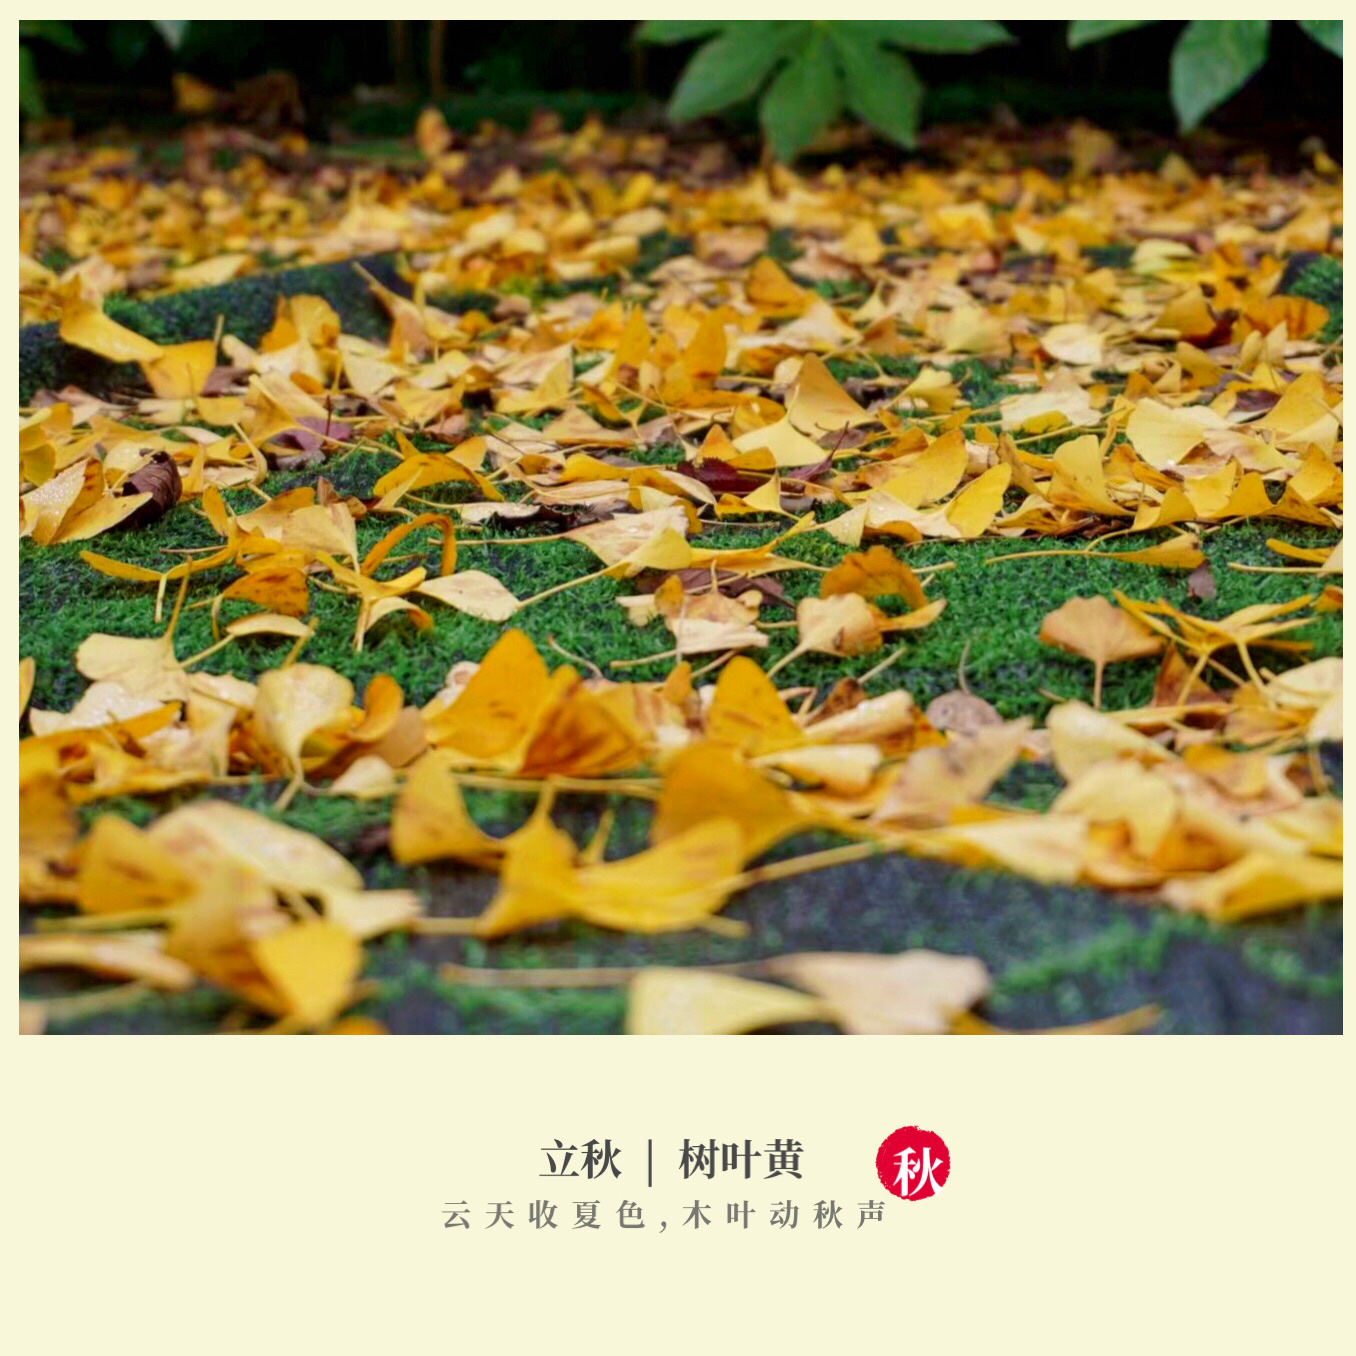 落叶 这是告知秋的开始 变色的叶子 是这个季节的风景 早秋惊满